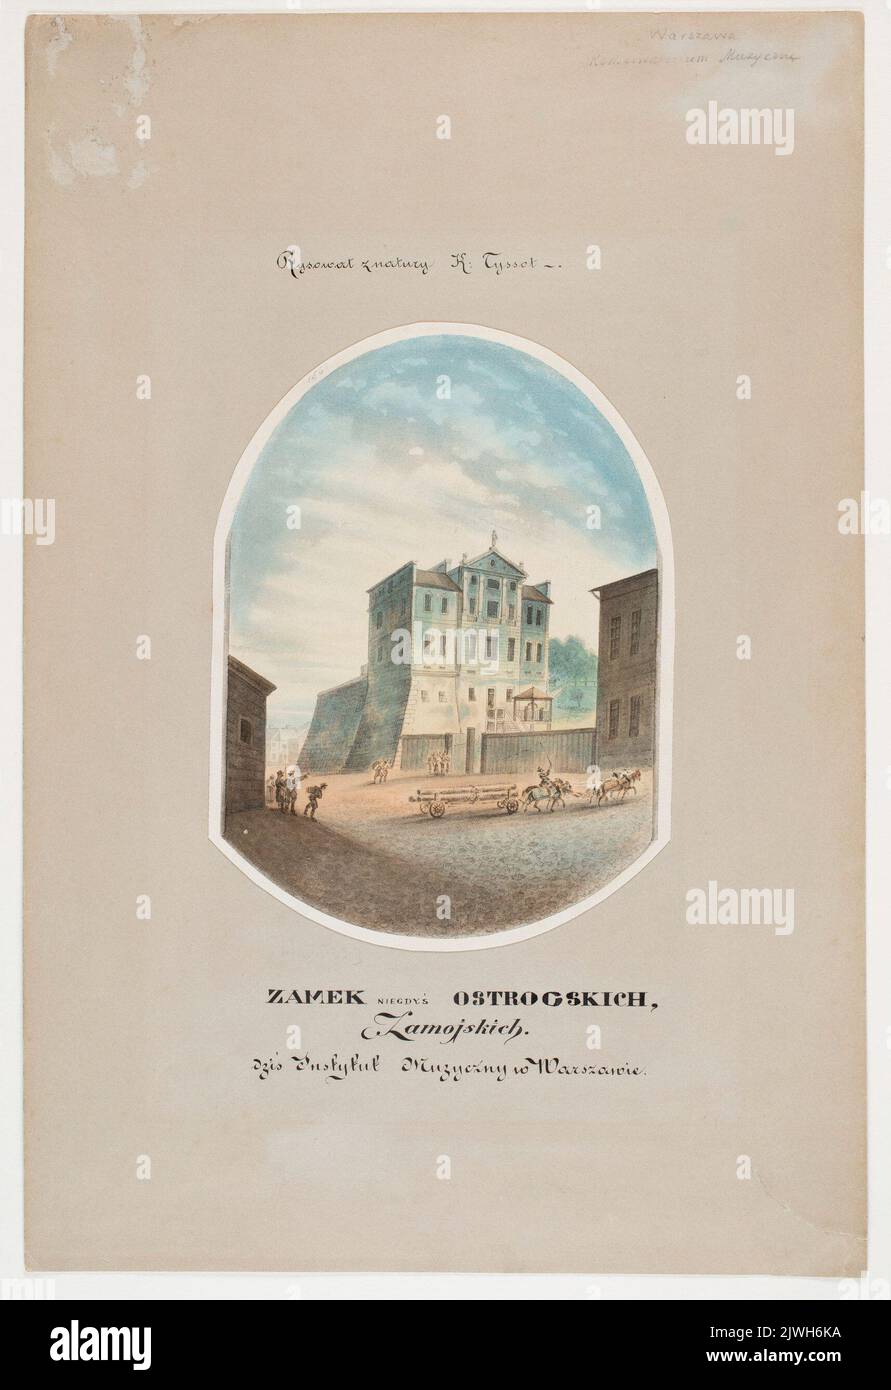 'Zamek niegdyś Ostrogskich, Zamoyskich, dziś Instytut Muzyczny w Warszawie'. Tysson, Karol (fl. 1840-1878), painter Stock Photo